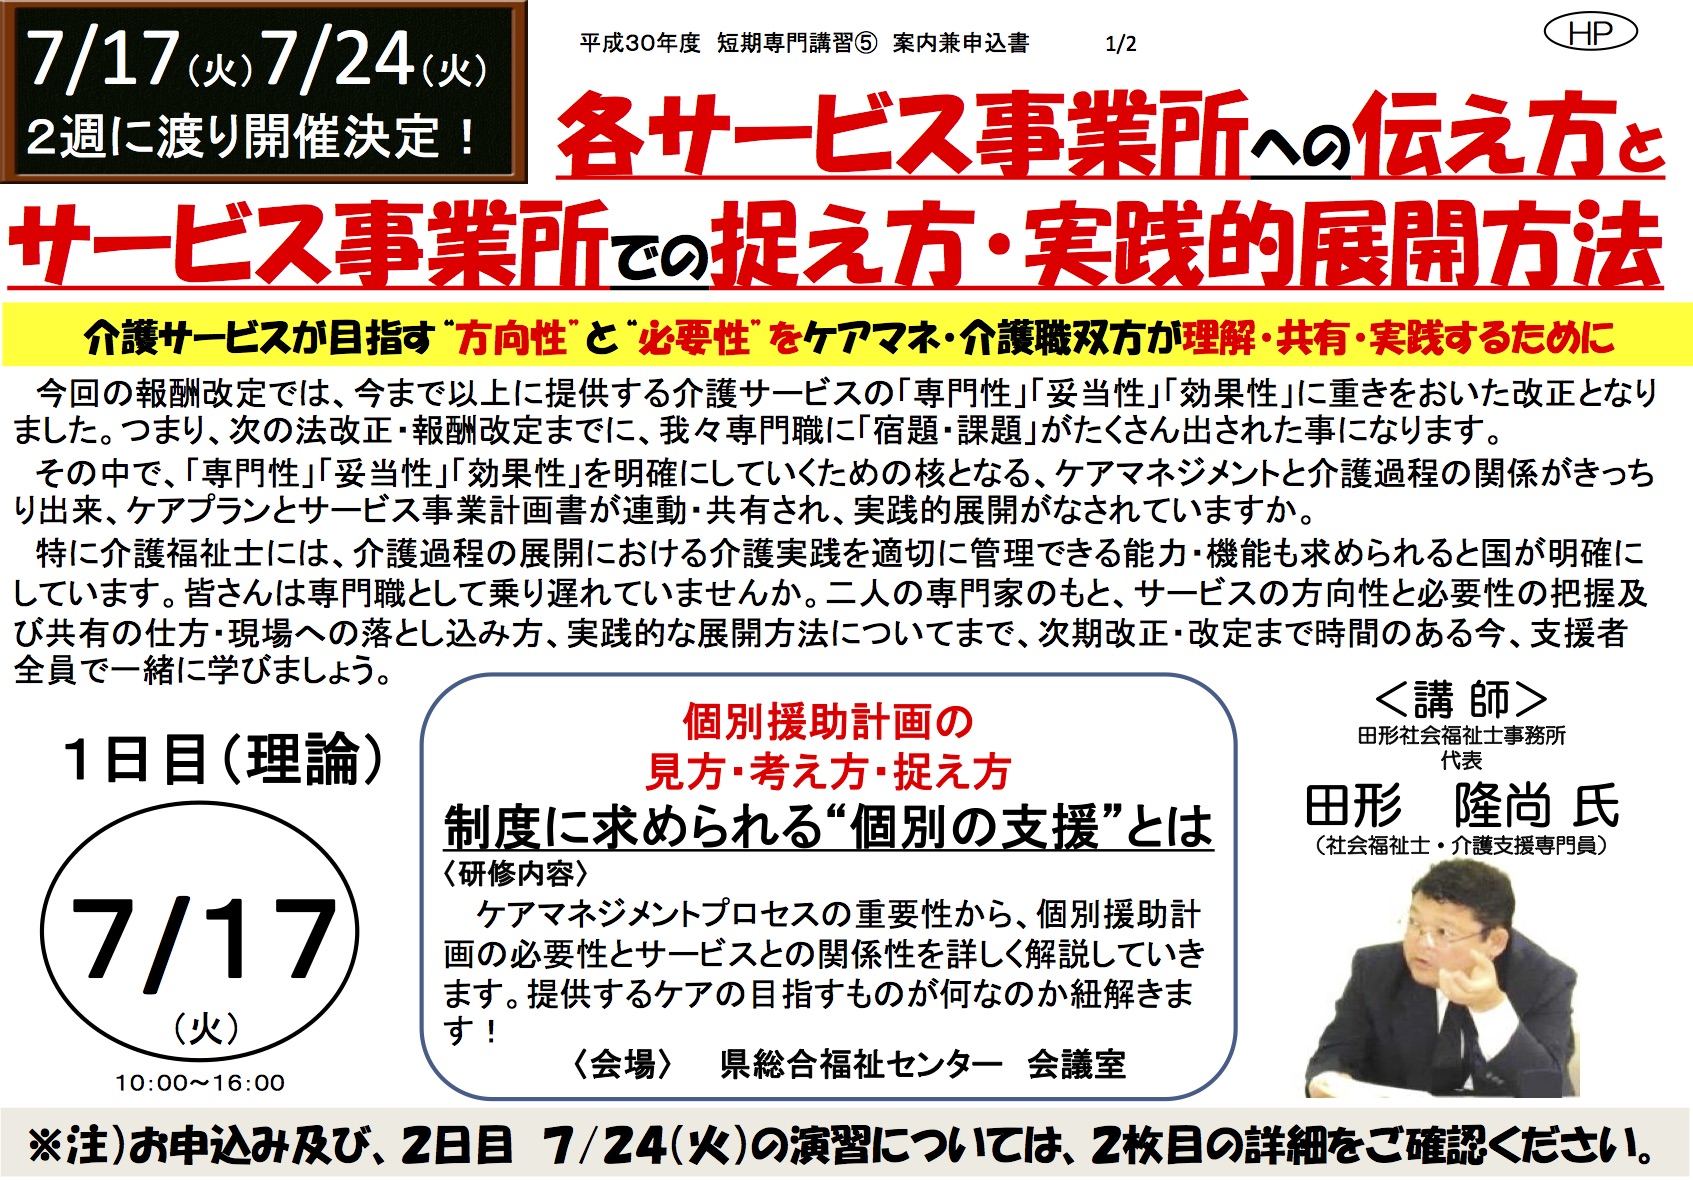 熊本県介護福祉士会 ７/14・7/24 研修会開催のお知らせ